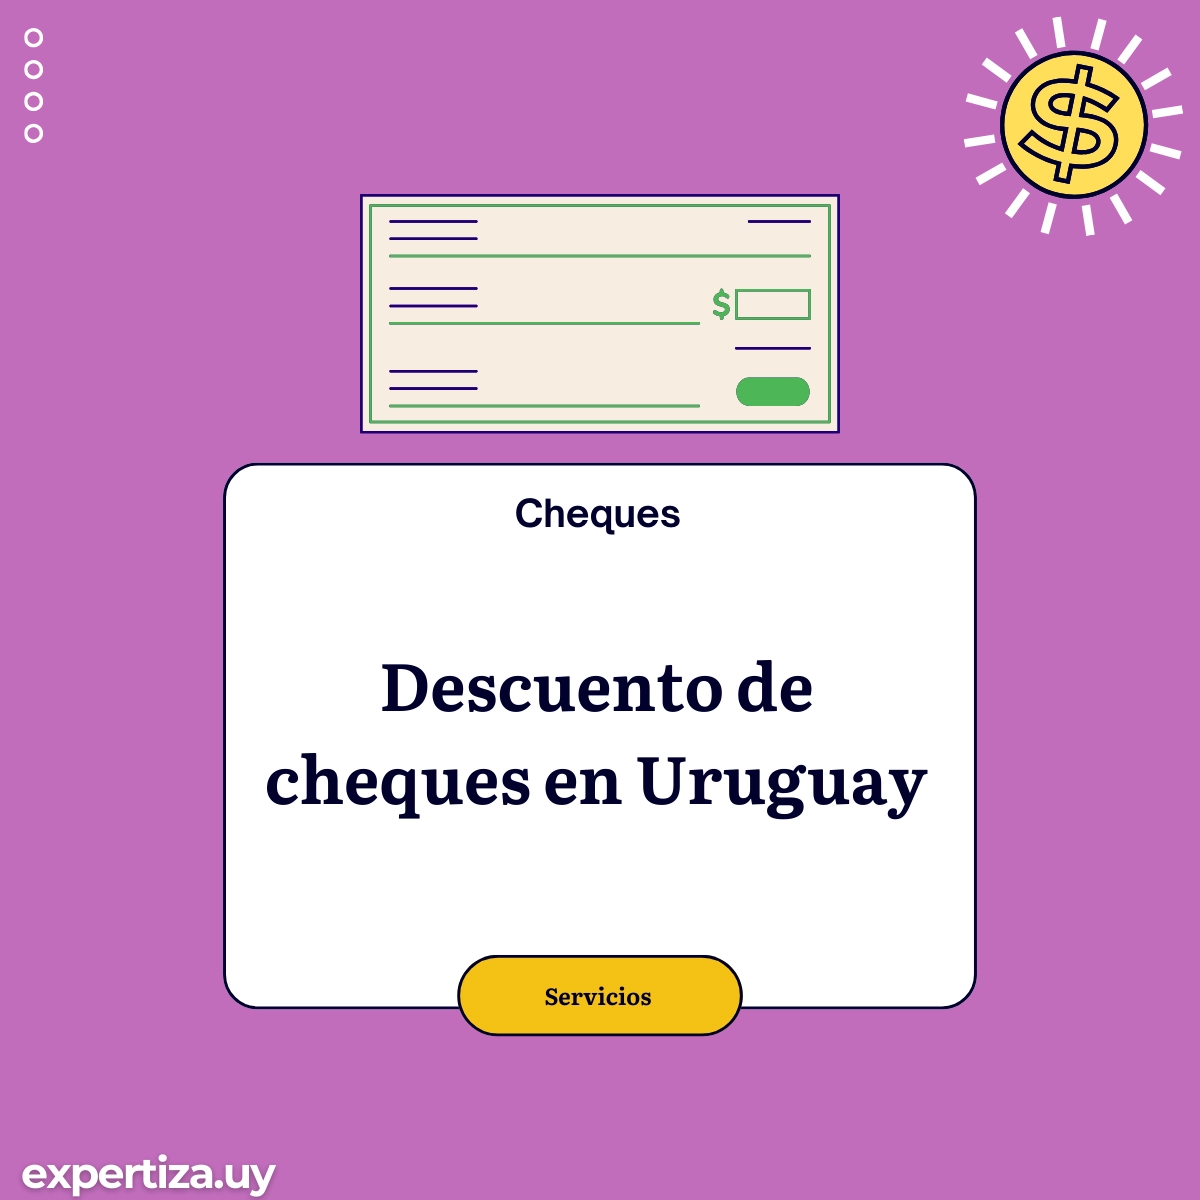 Descuento de cheques en Uruguay.